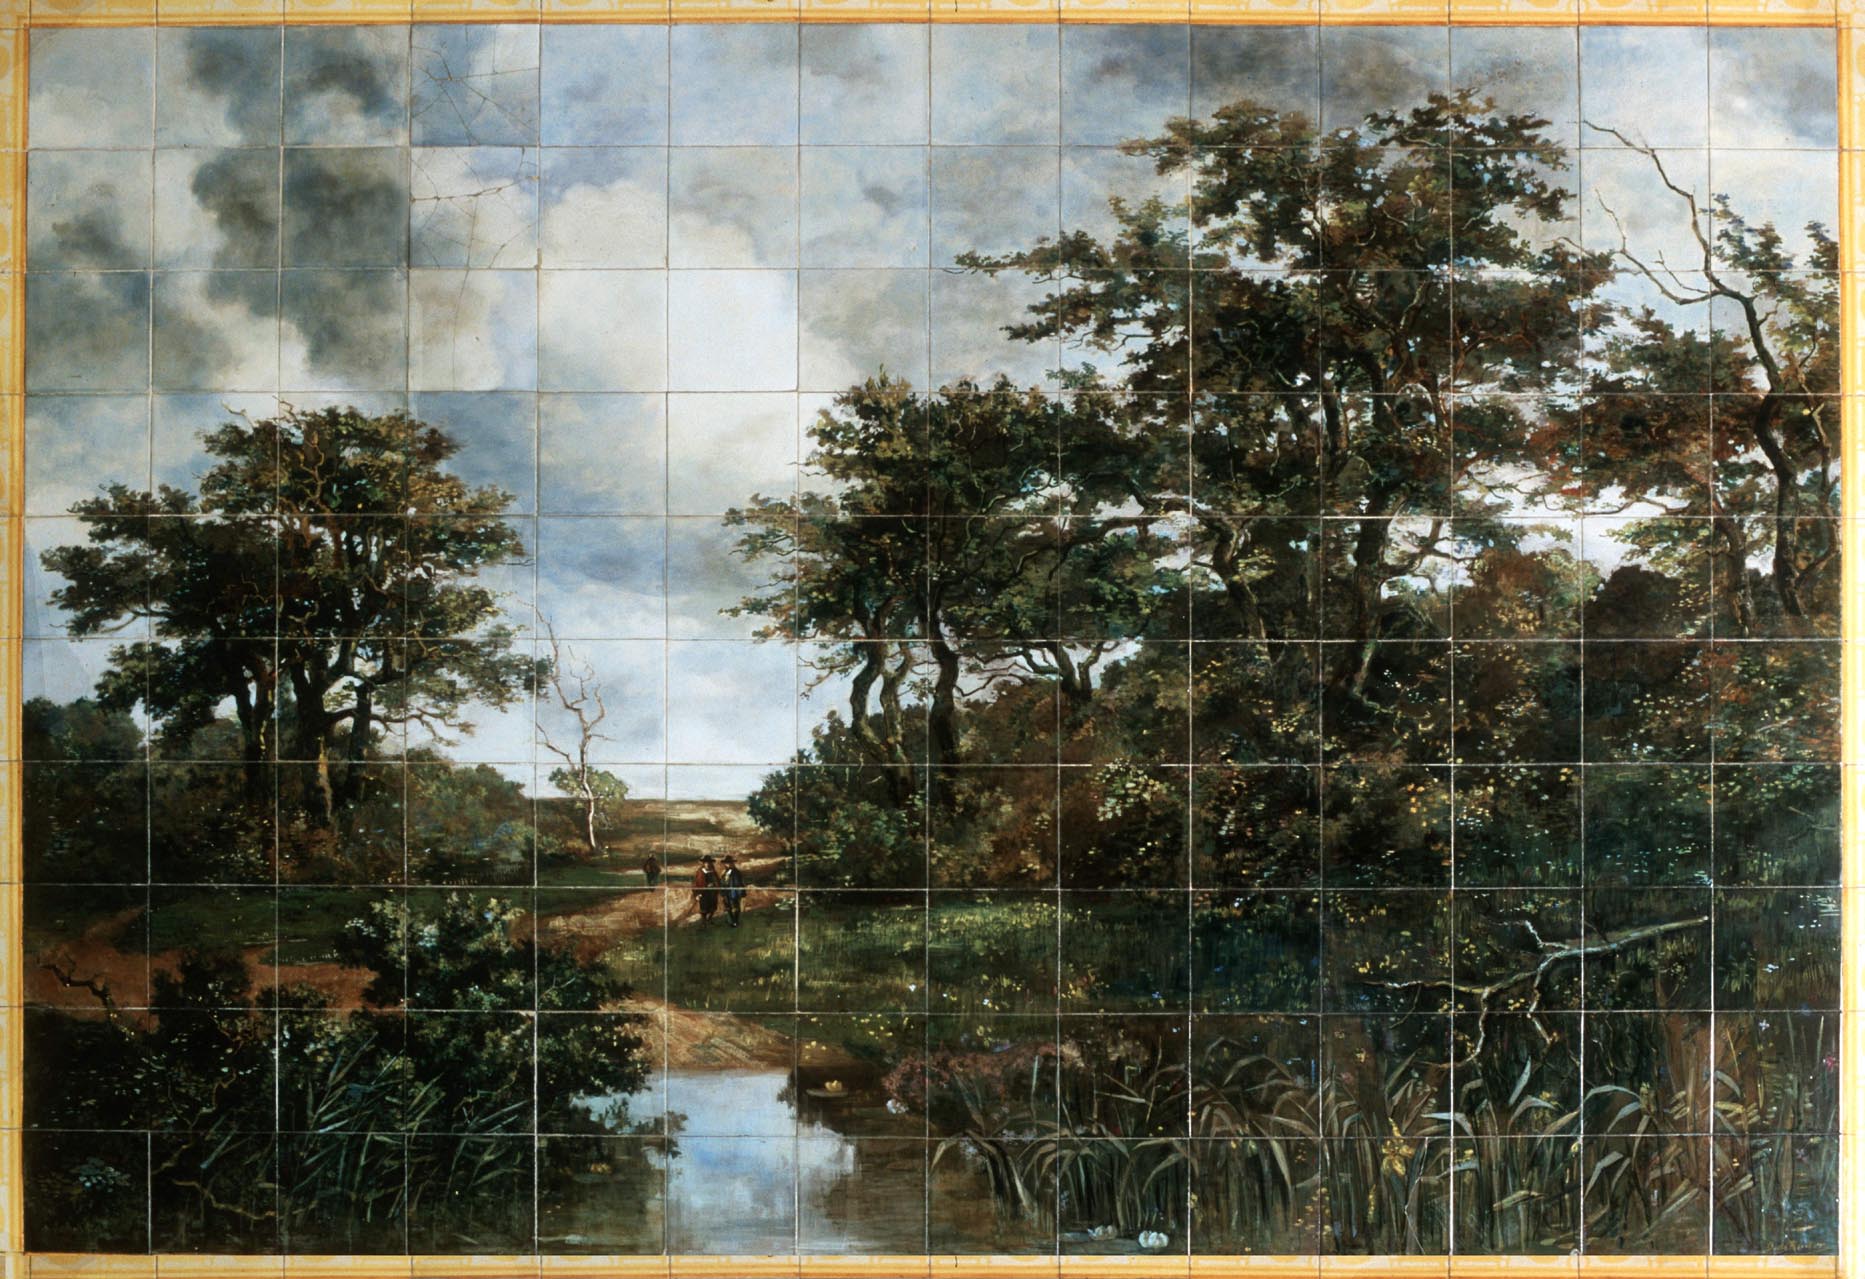 Fotografia obrazu w technice malunku na płytkach ceramicznych przedstawiającego krajobraz naturalny z trzema postaciami mężczyzn zmierzających na polowanie, zdobiącego hol główny pałacu.